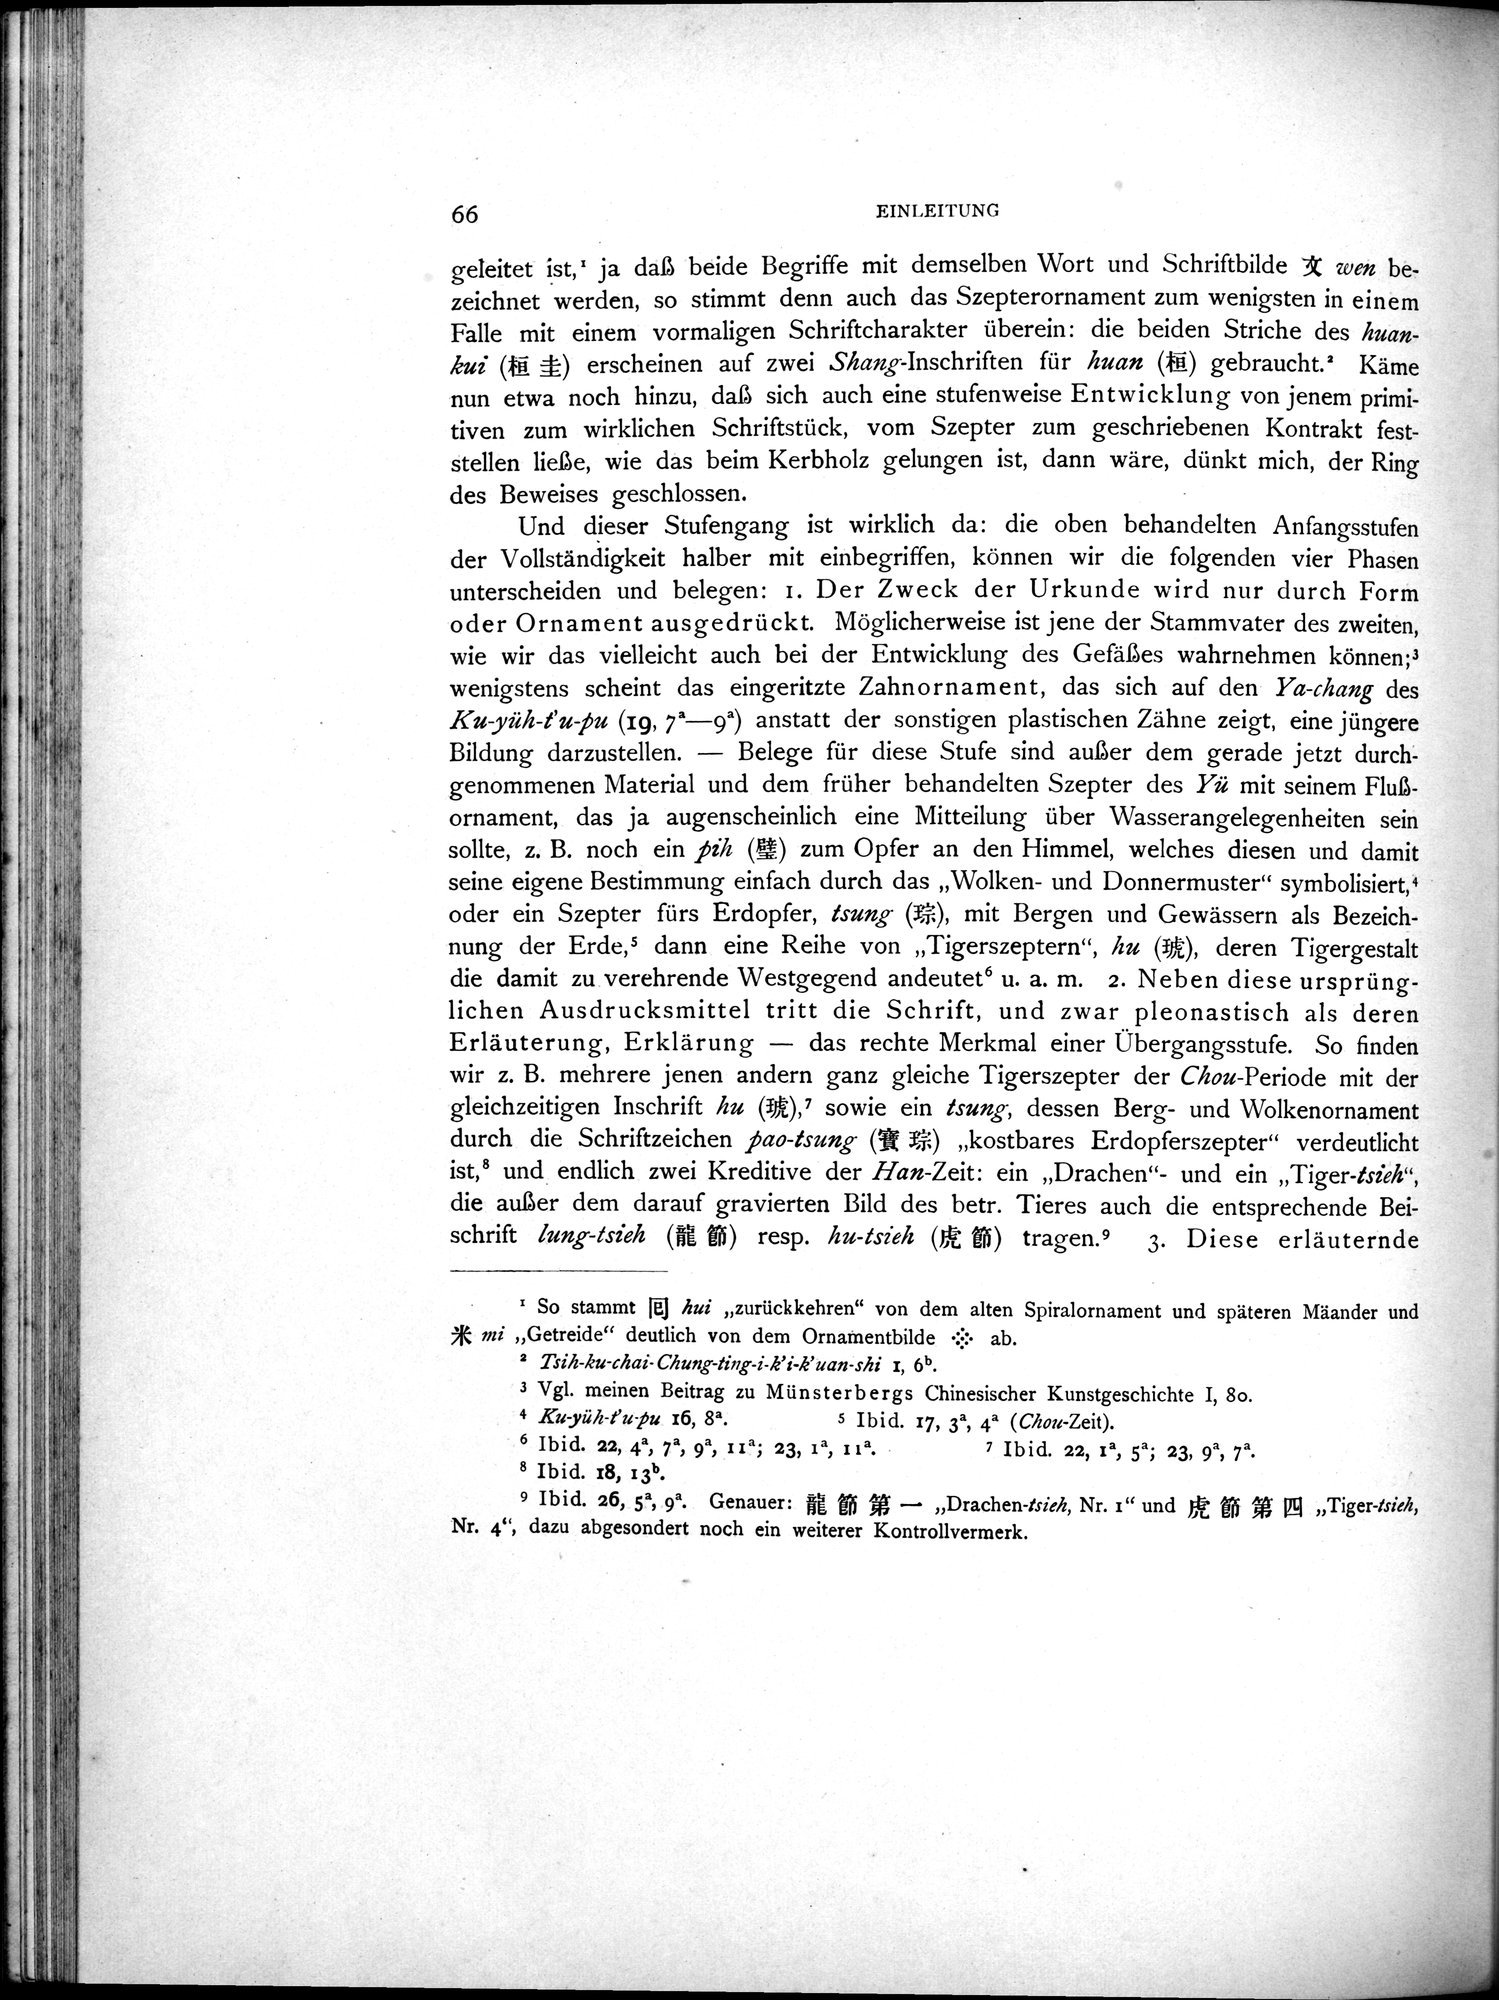 Die Chinesischen Handschriften- und sonstigen Kleinfunde Sven Hedins in Lou-lan : vol.1 / Page 90 (Grayscale High Resolution Image)